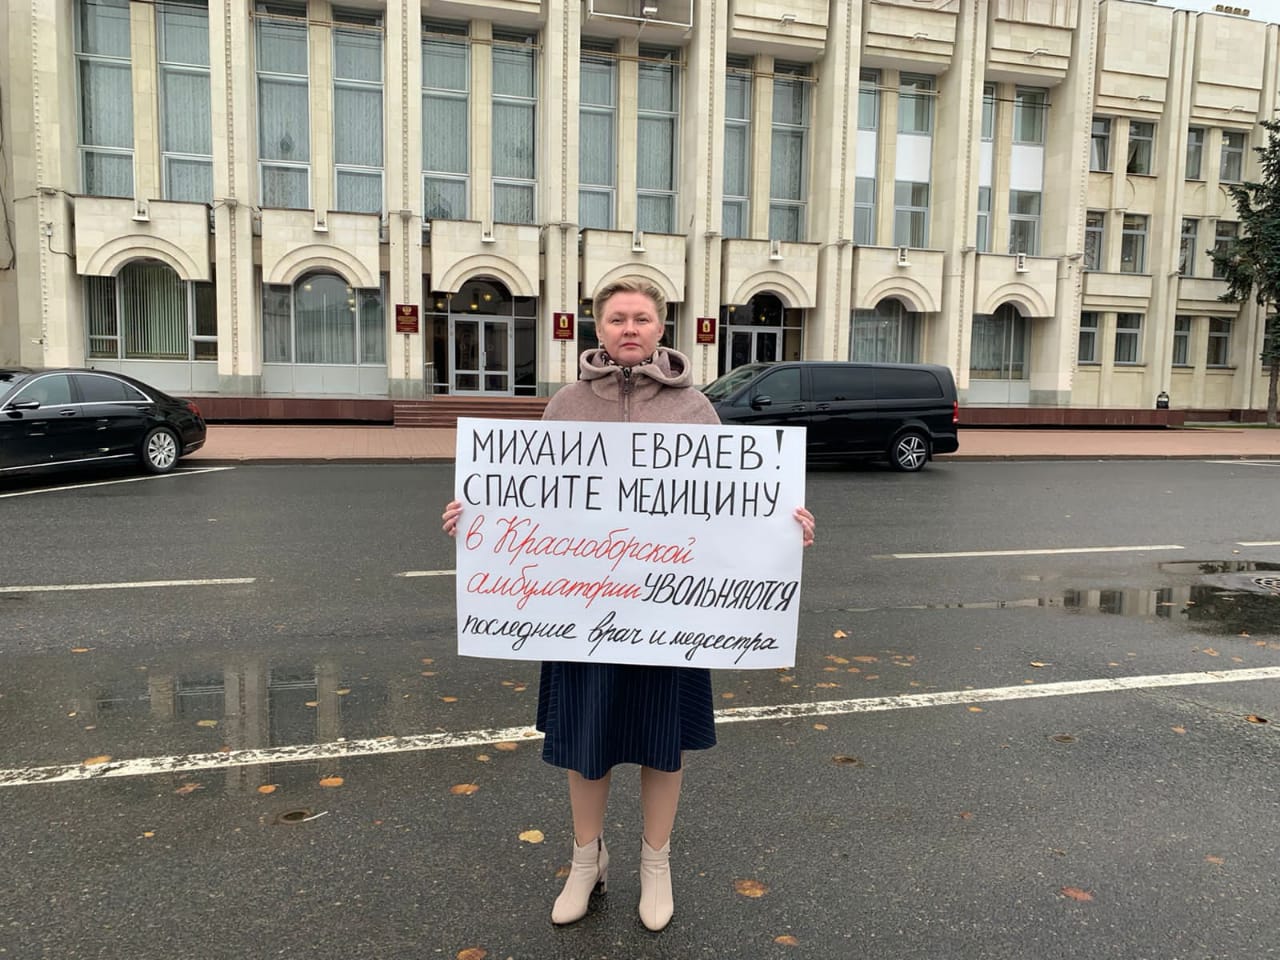 Ярославские коммунисты надеются на открытый диалог с Михаилом Евраевым